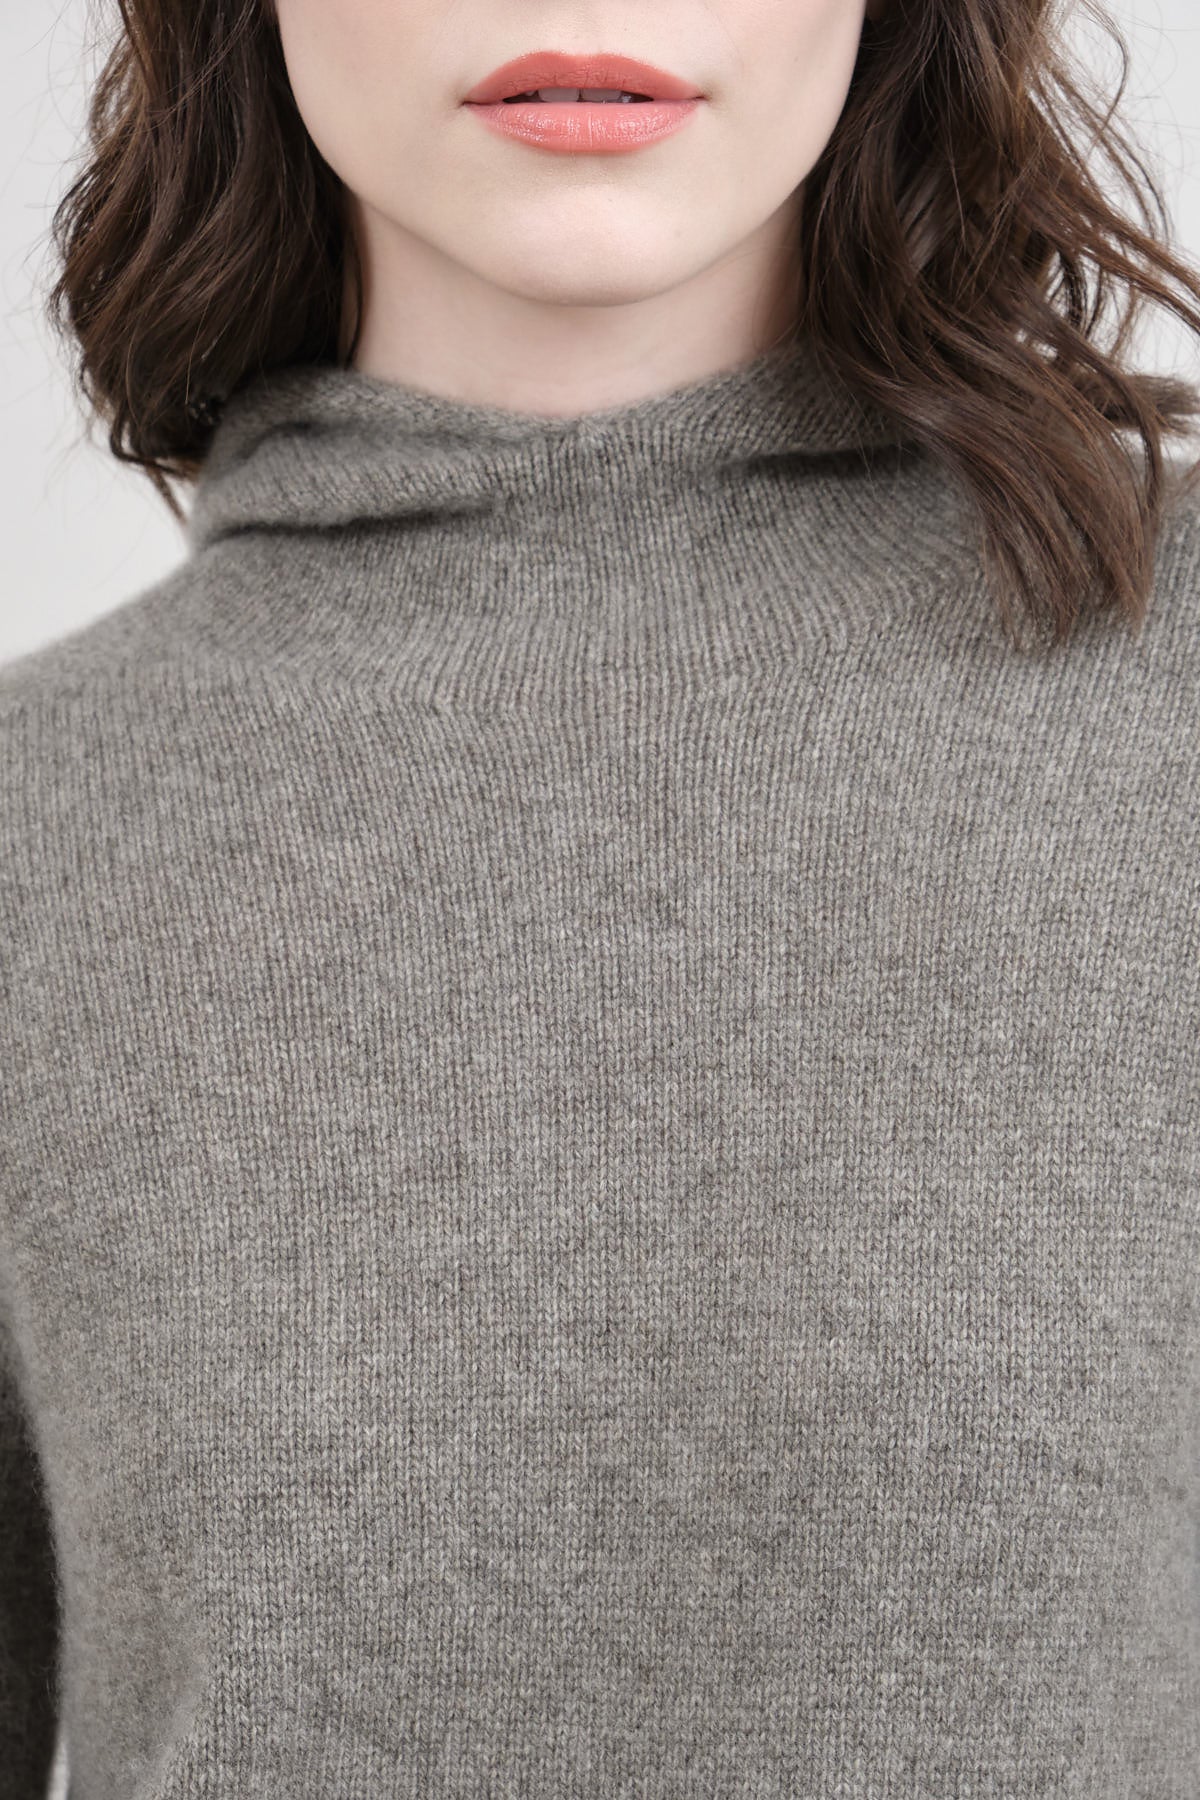 high quality cashmere sweater evam eva